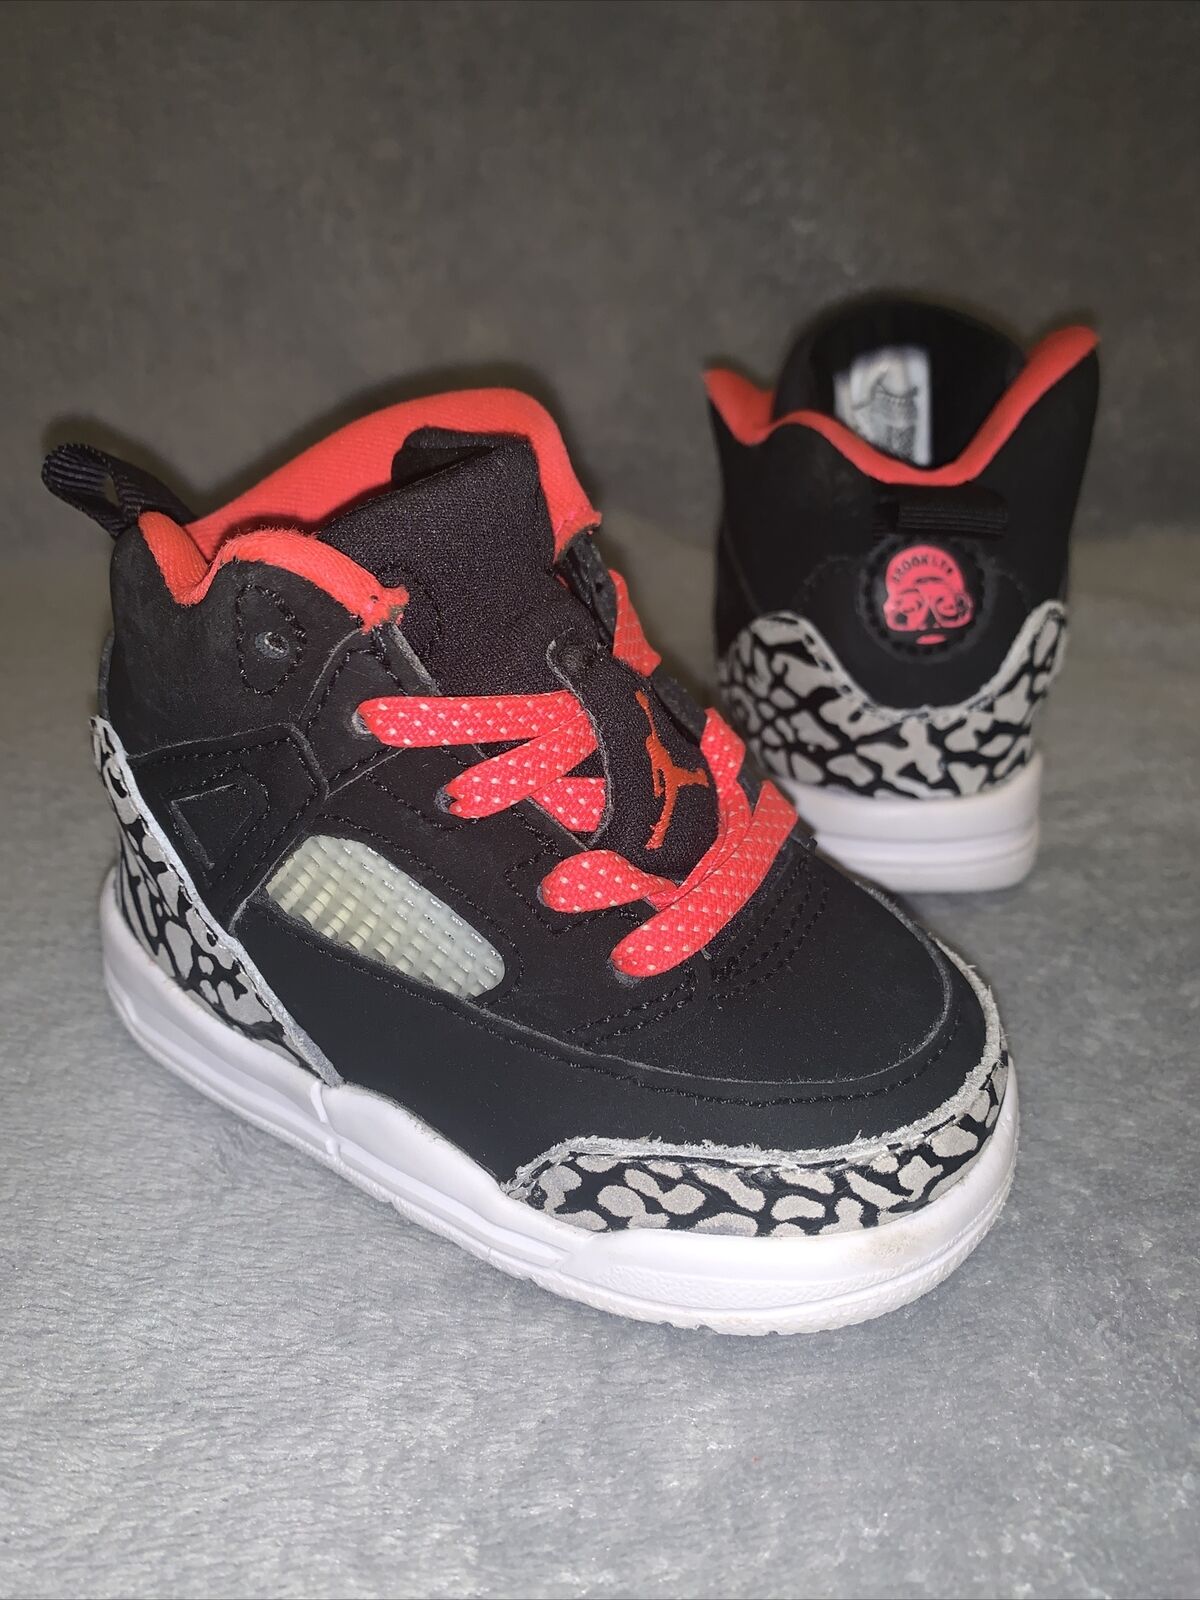 Toddler Nike Air Jordan Spizike Basketball Shoes ‘Black Red Orbit’ - Size 4C